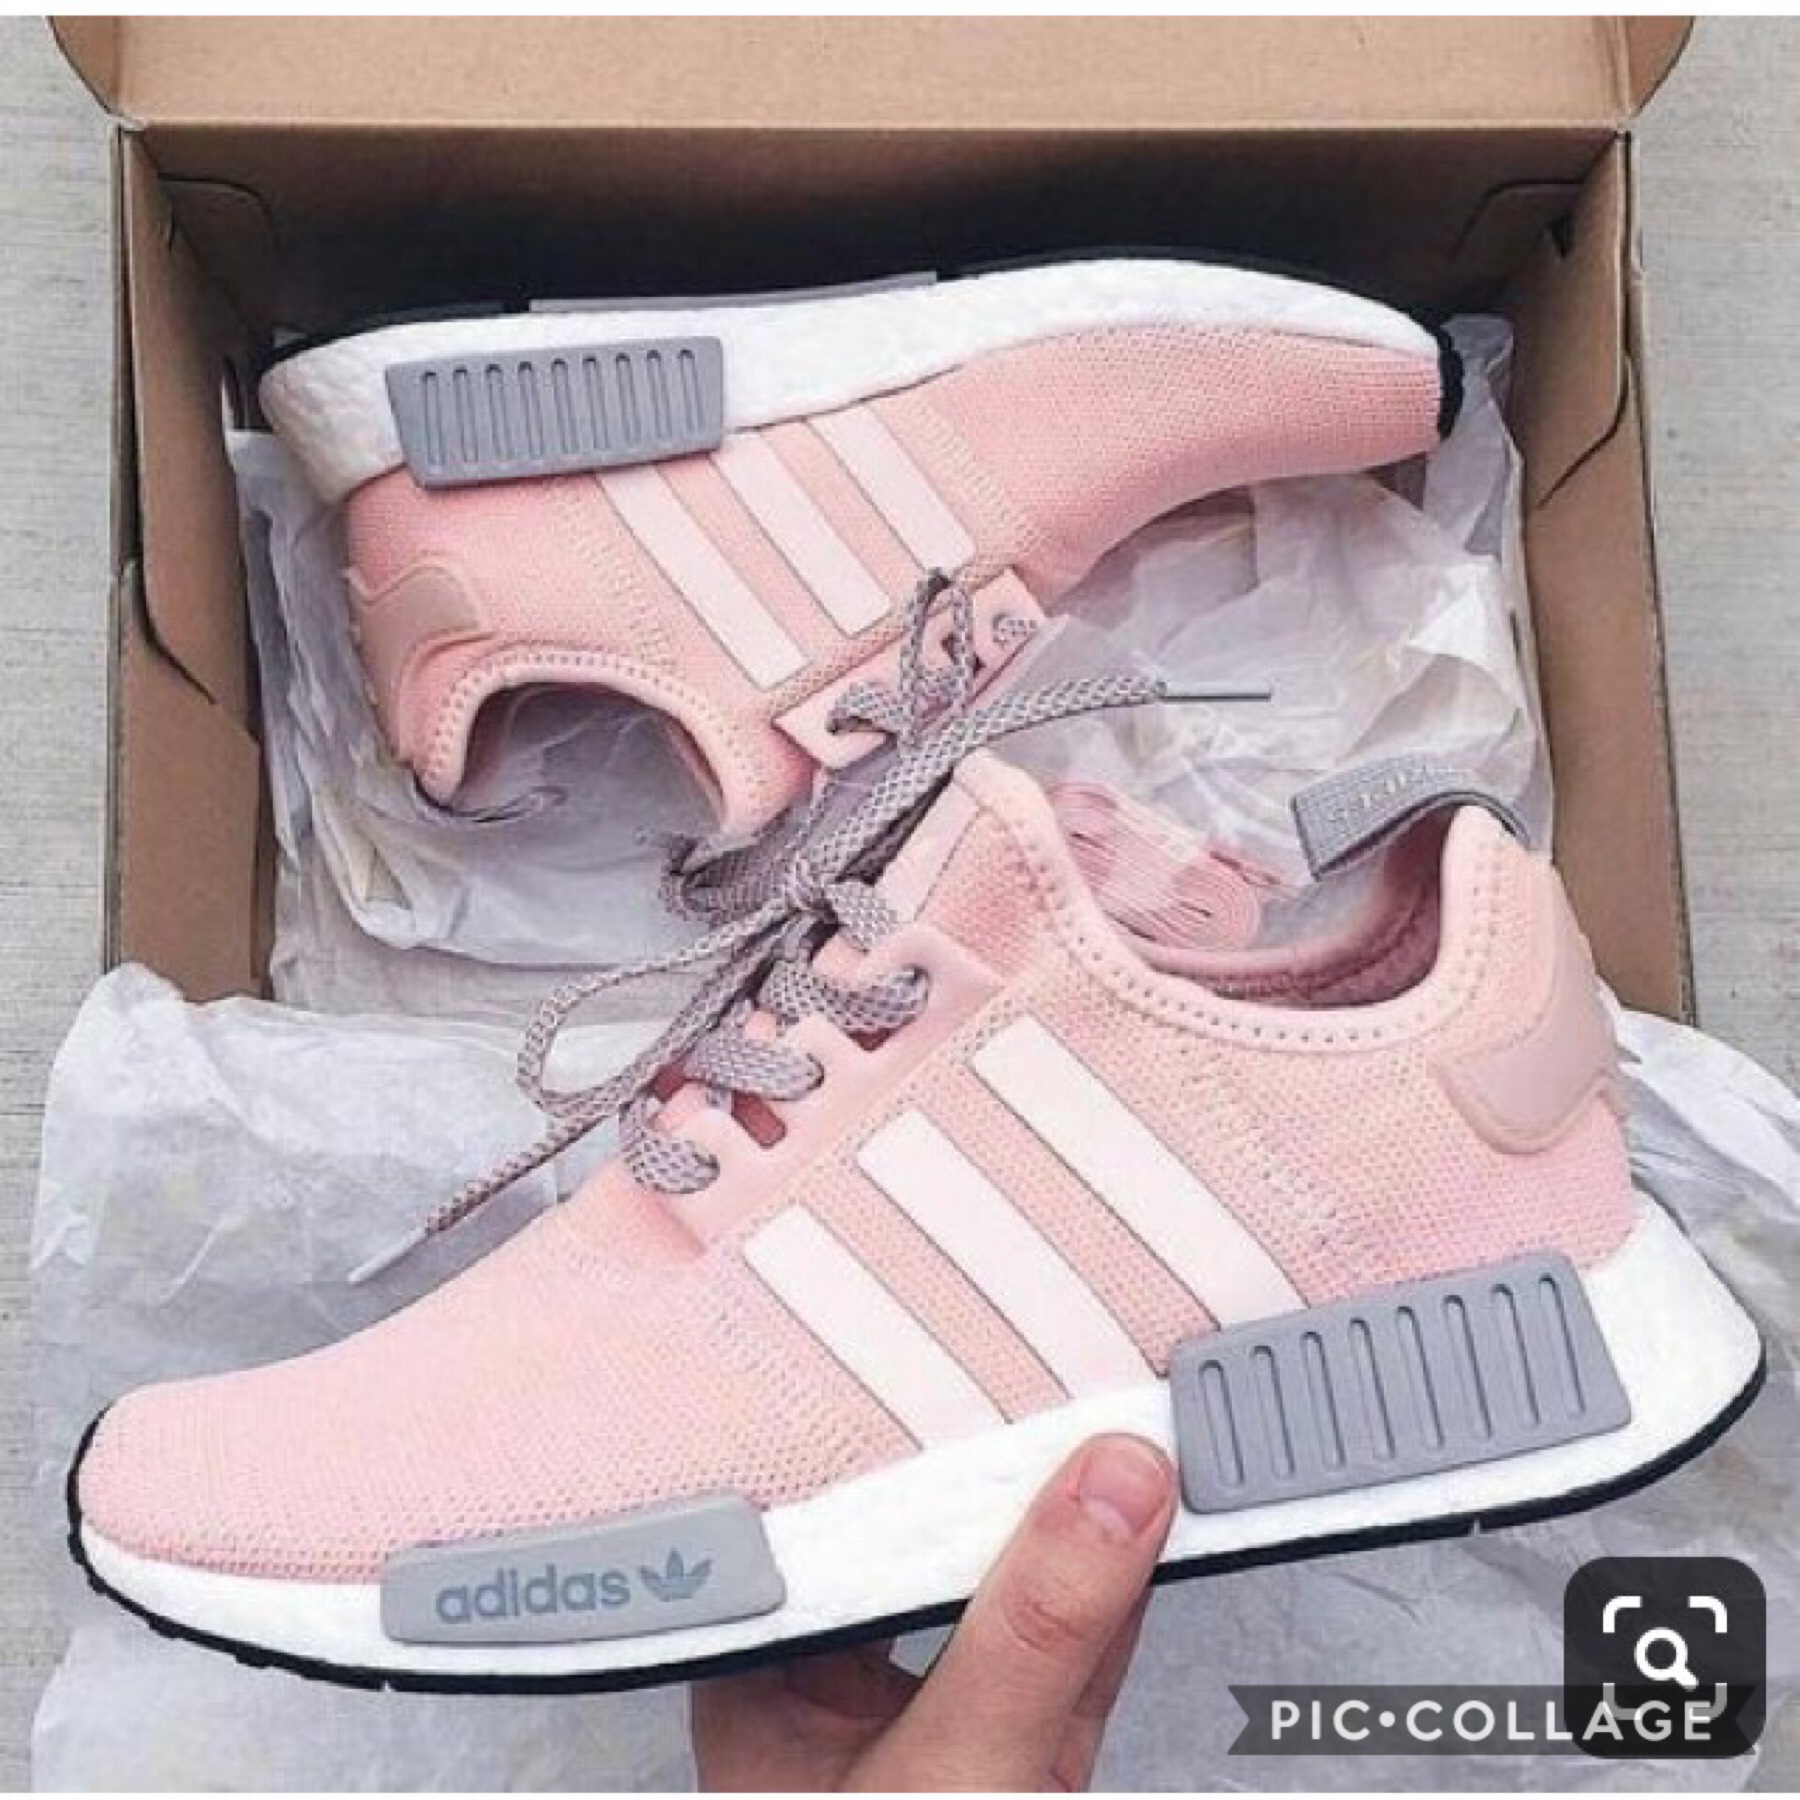 Pink and gray Adidas
6-24-19